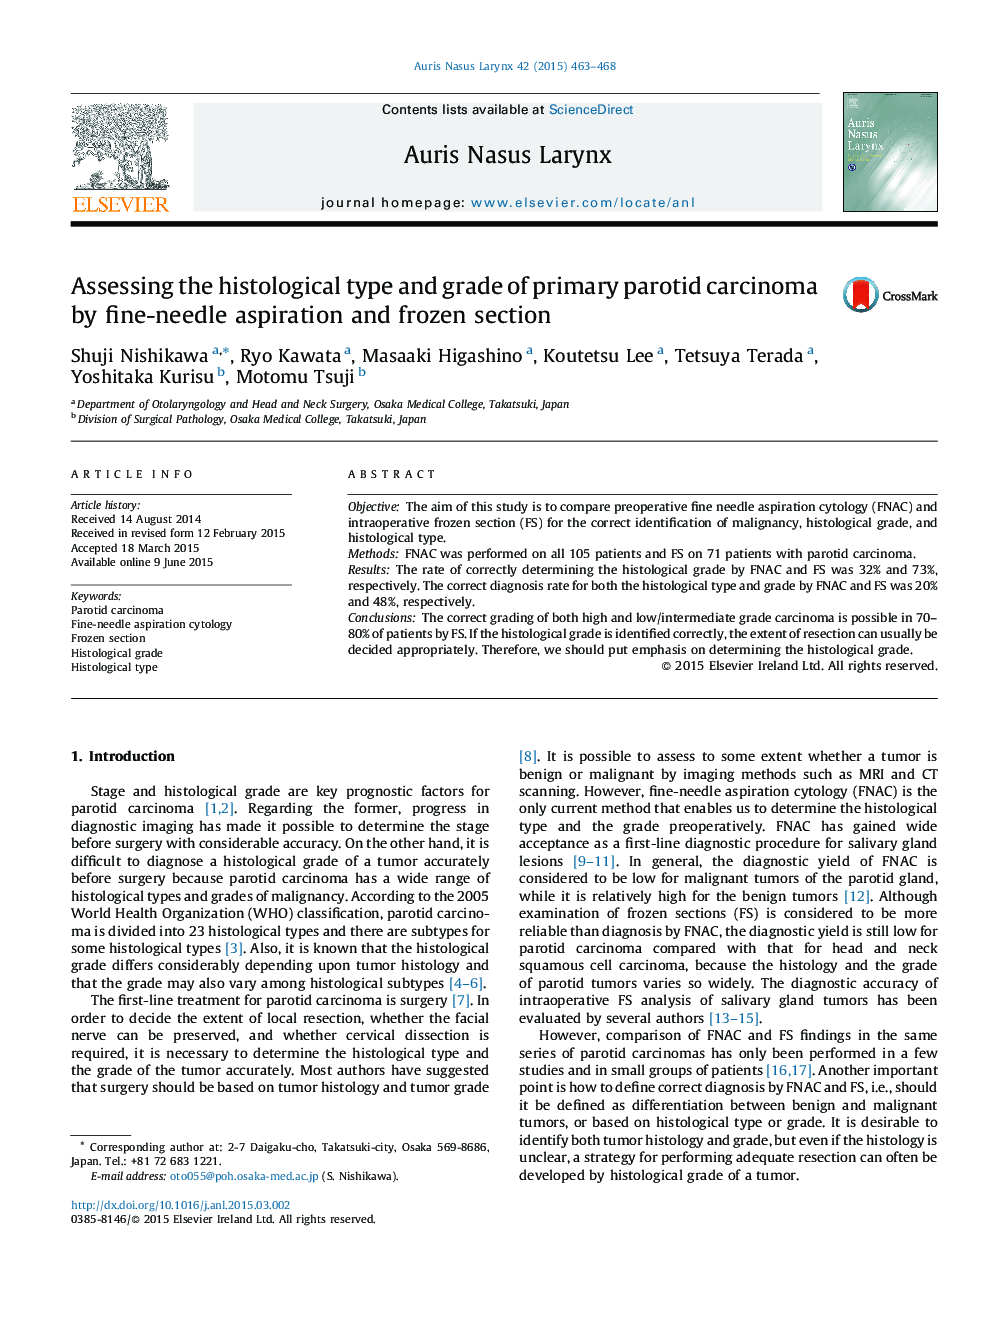 ارزیابی نوع بافتشناسی و درجه کارسینوم پروتئینی اولیه با استفاده از آسپیراسیون سوزنی و بخش یخ زده 